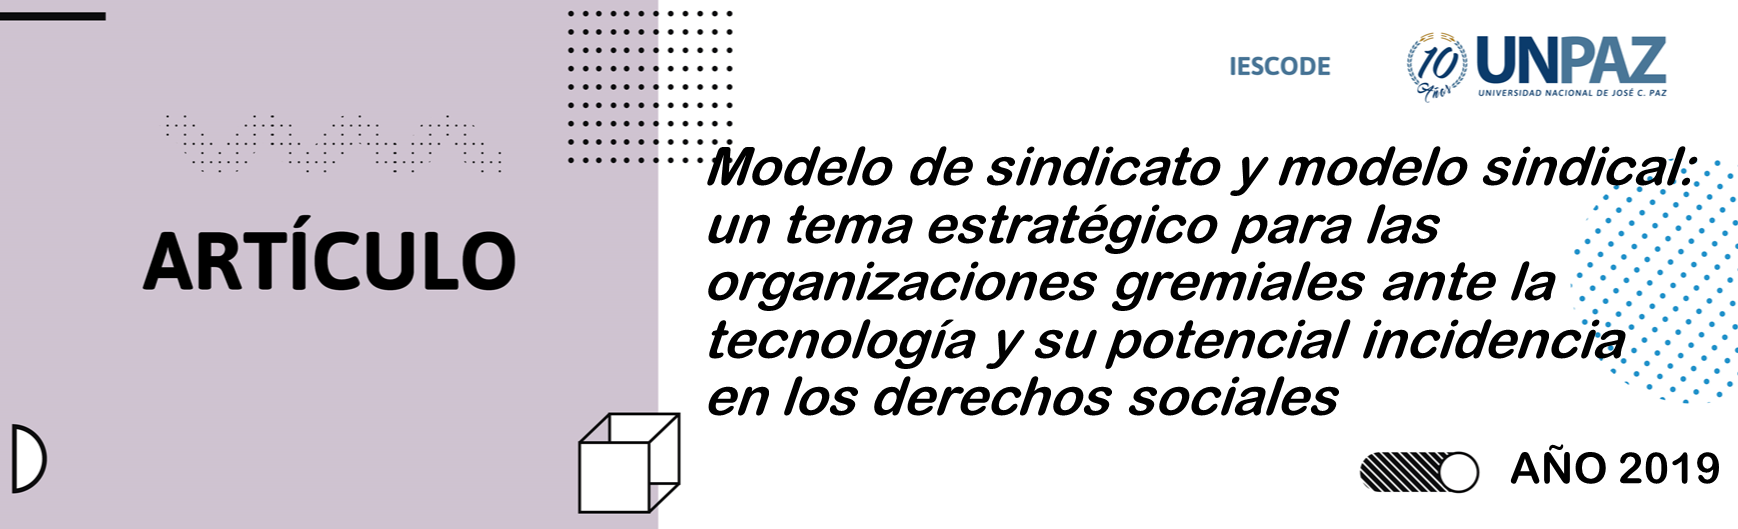 MODELO DE SINDICATO Y MODELO SINDICAL: un tema estratégico para las organizaciones gremiales ante la tecnología y su potencial incidencia en los derechos sociales